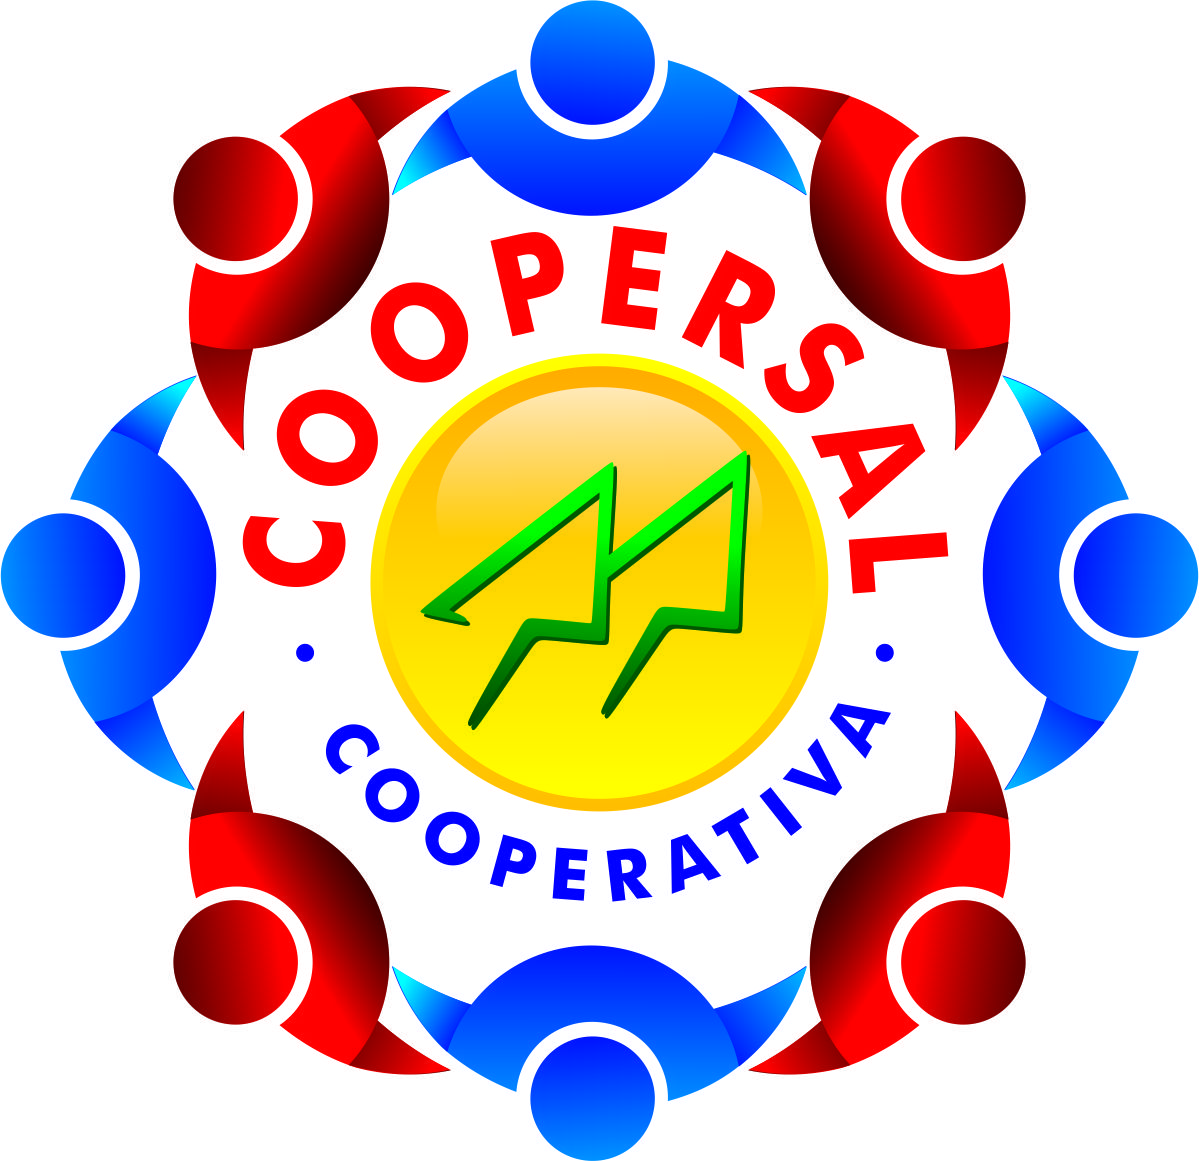 COOPERSAL - COOPERATIVA - Transporte de Pessoas - Salvador, BA